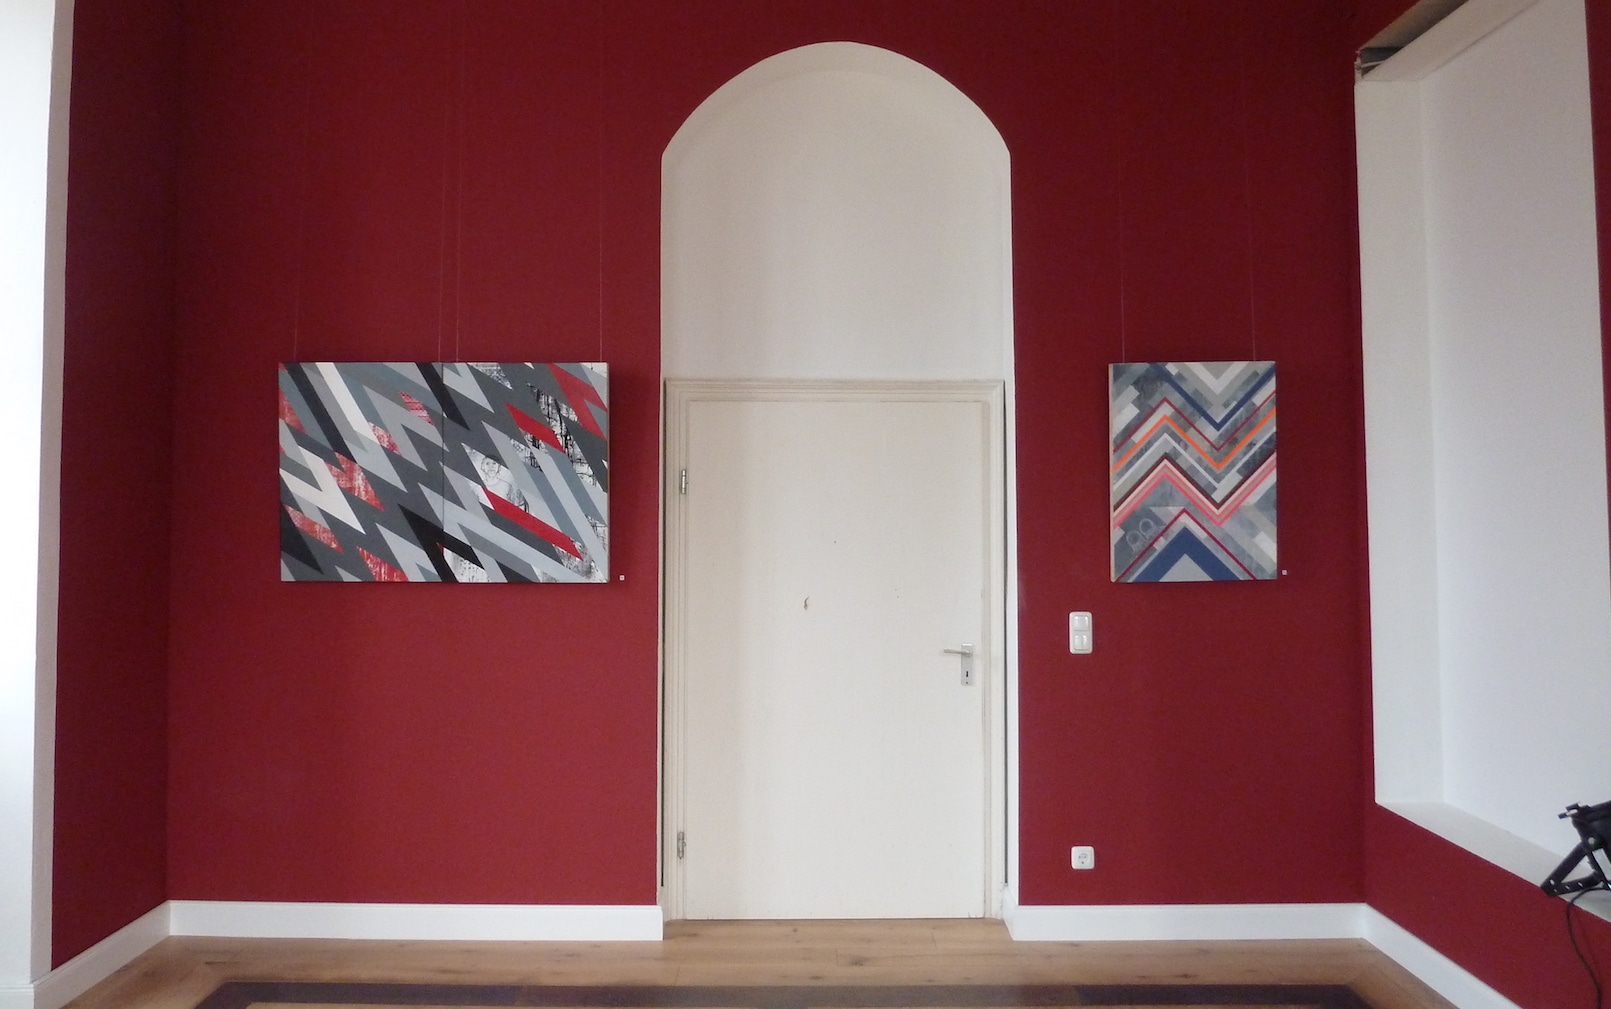 Kunstausstellung mit geografischen Gemälden im roten Salon. Die Gemälde befinden sich an der Wand, zwischen Ihnen ist eine weisse Eingangstür.